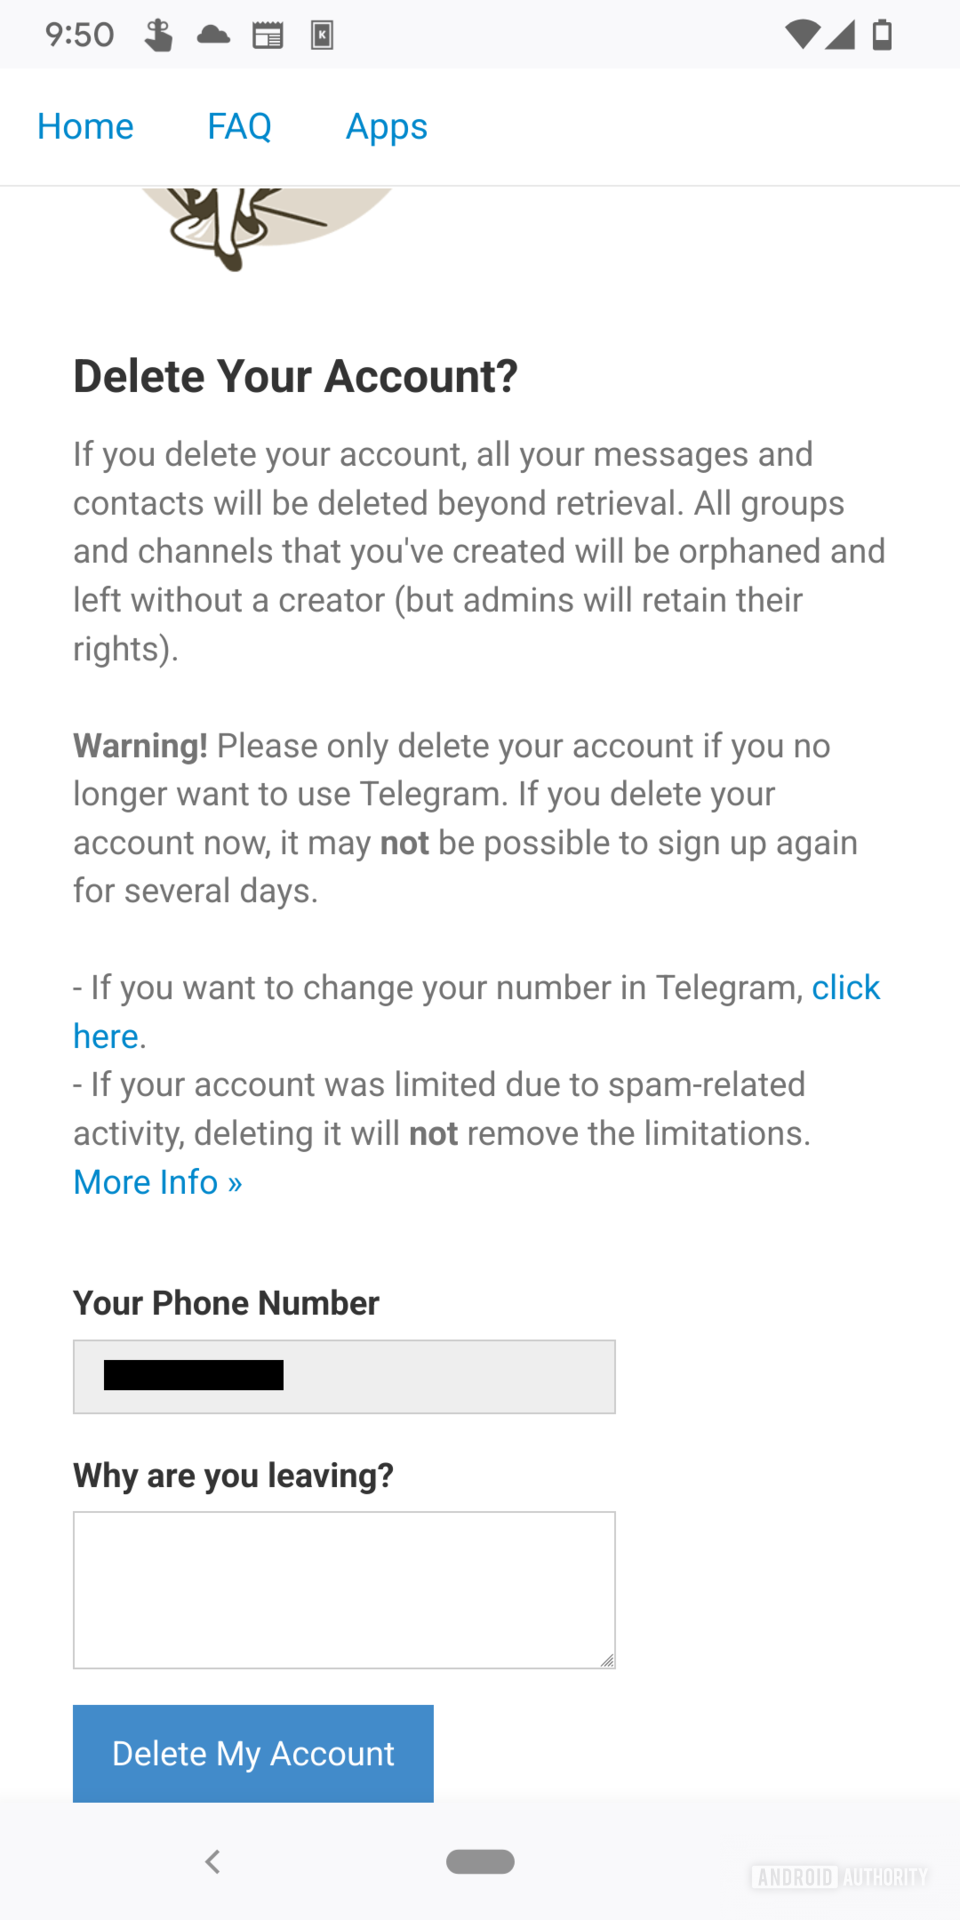 La página de eliminación de cuenta del portal web de Telegram que incluye una advertencia que incluye detalles de lo que sucede al eliminar la cuenta y un campo para ingresar un motivo para eliminar la cuenta debajo del cual hay un botón azul que dice 